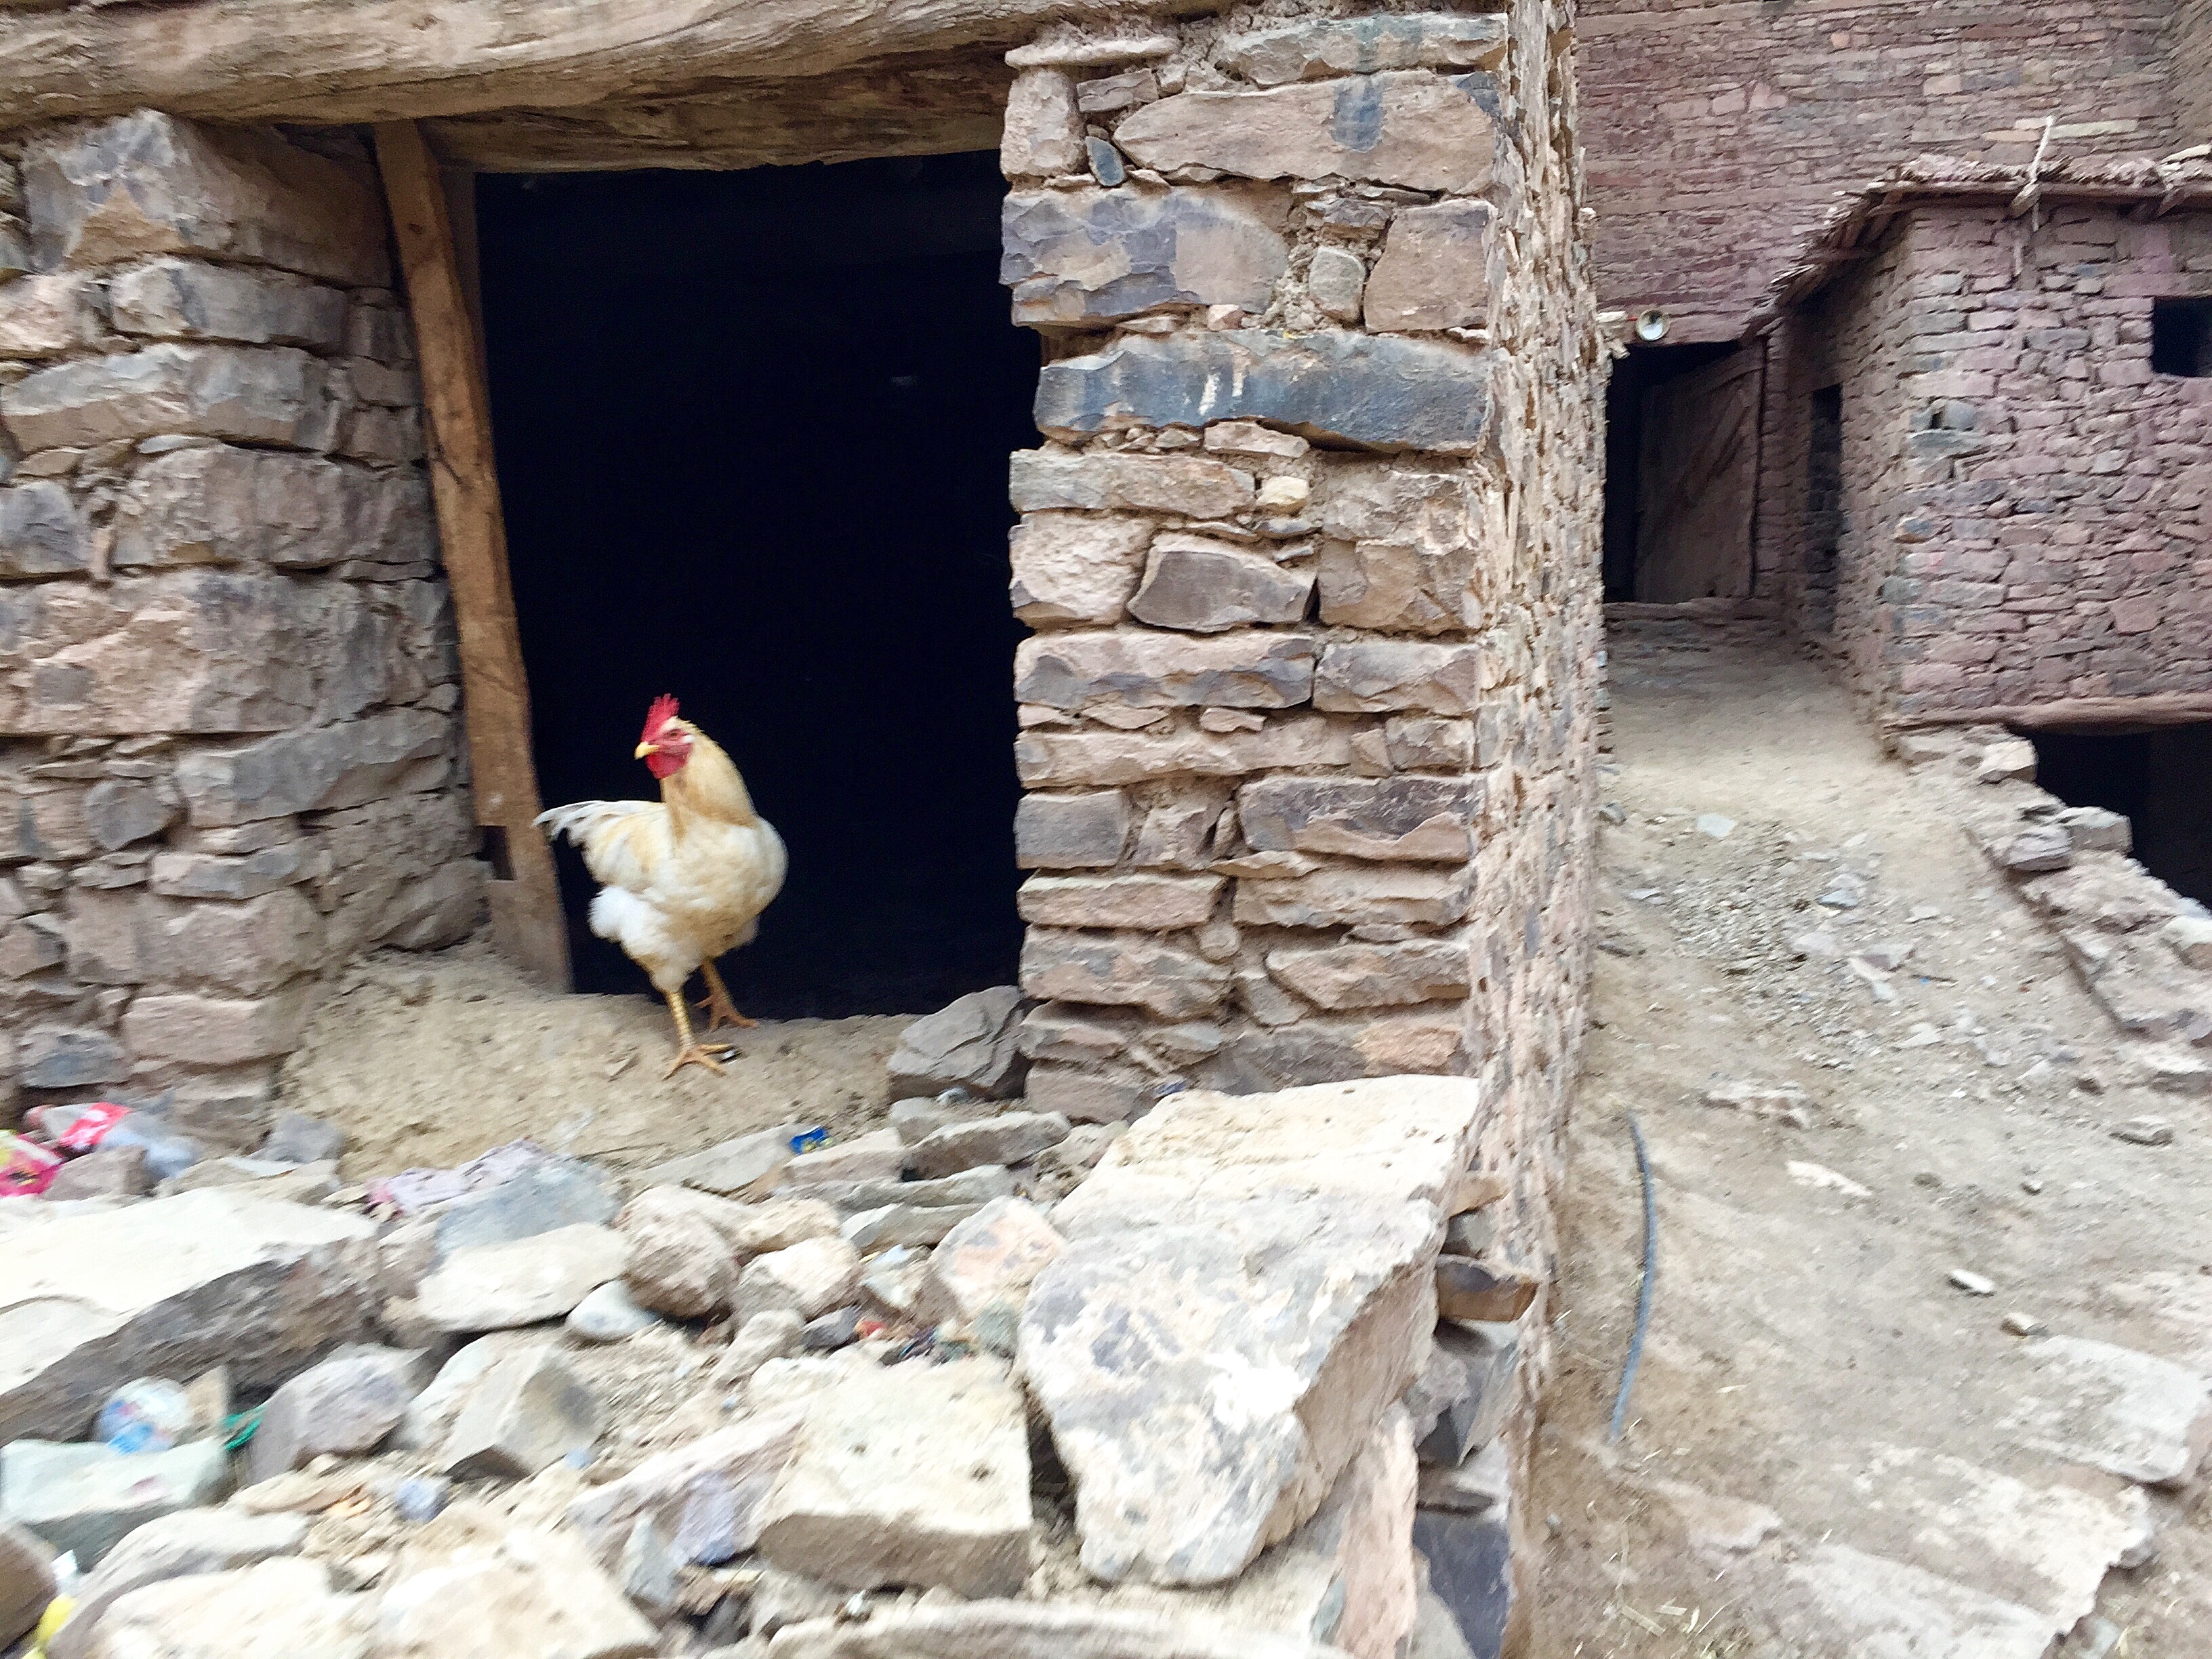 chicken, Agoumin, Morocco climbing,